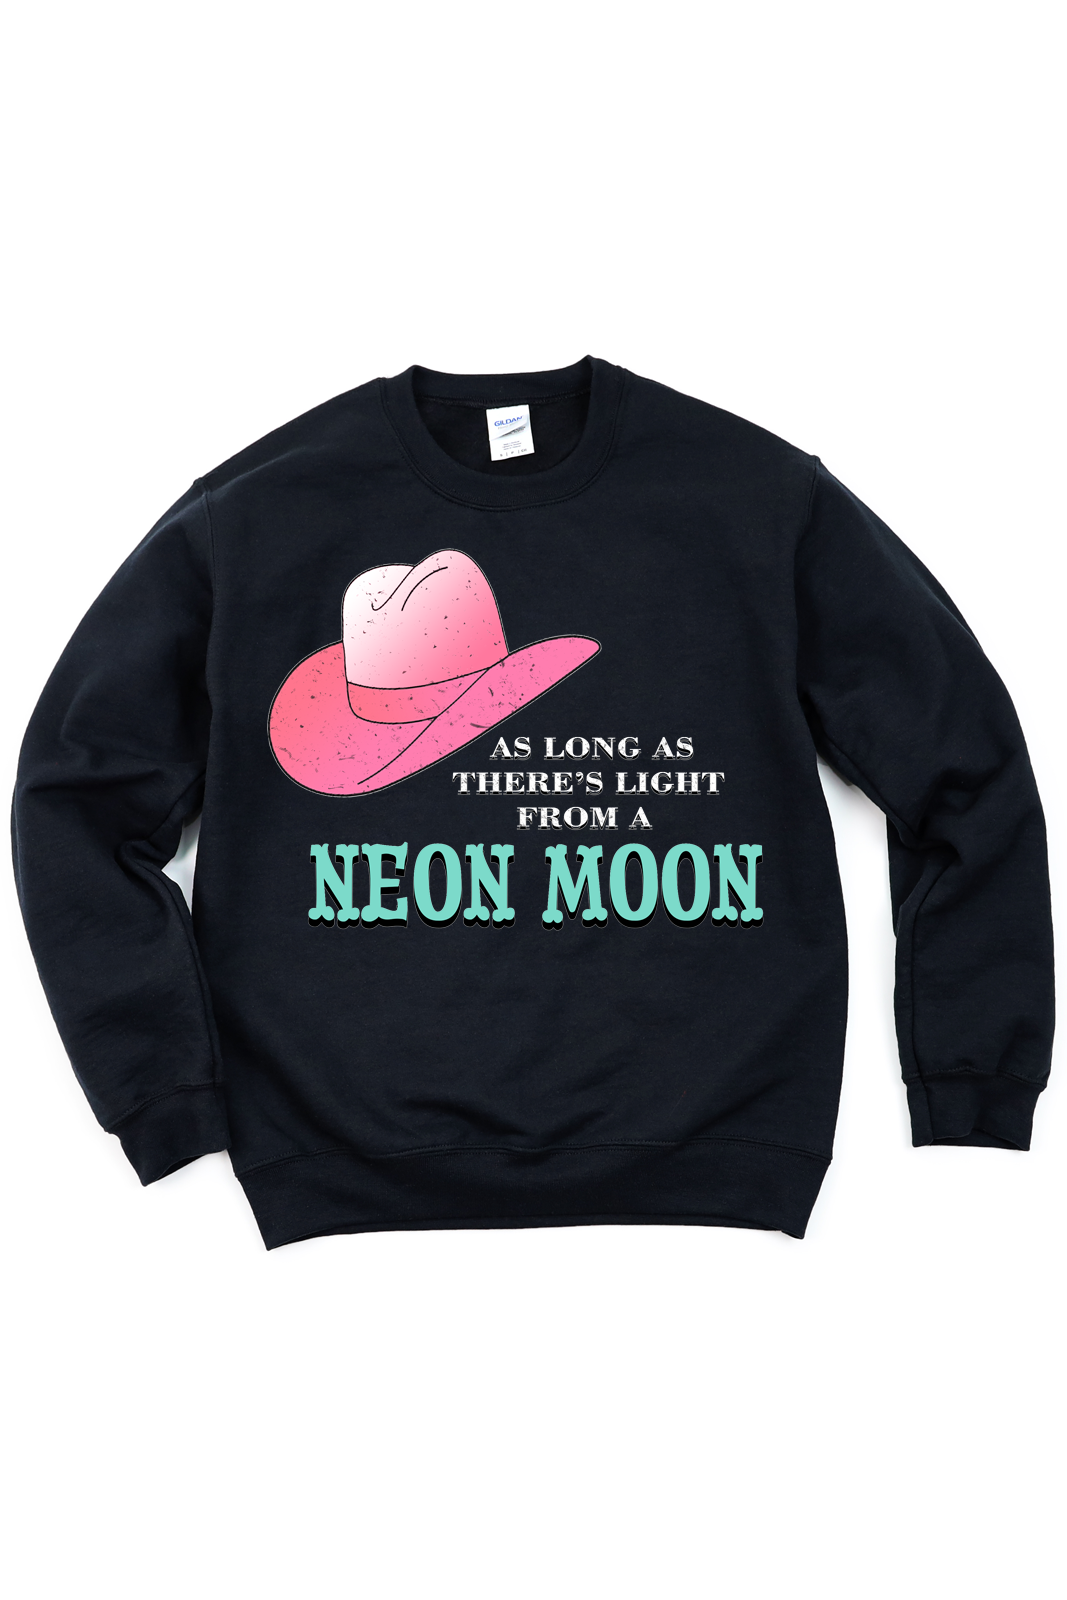 Neon Moon Tee/Sweatshirt